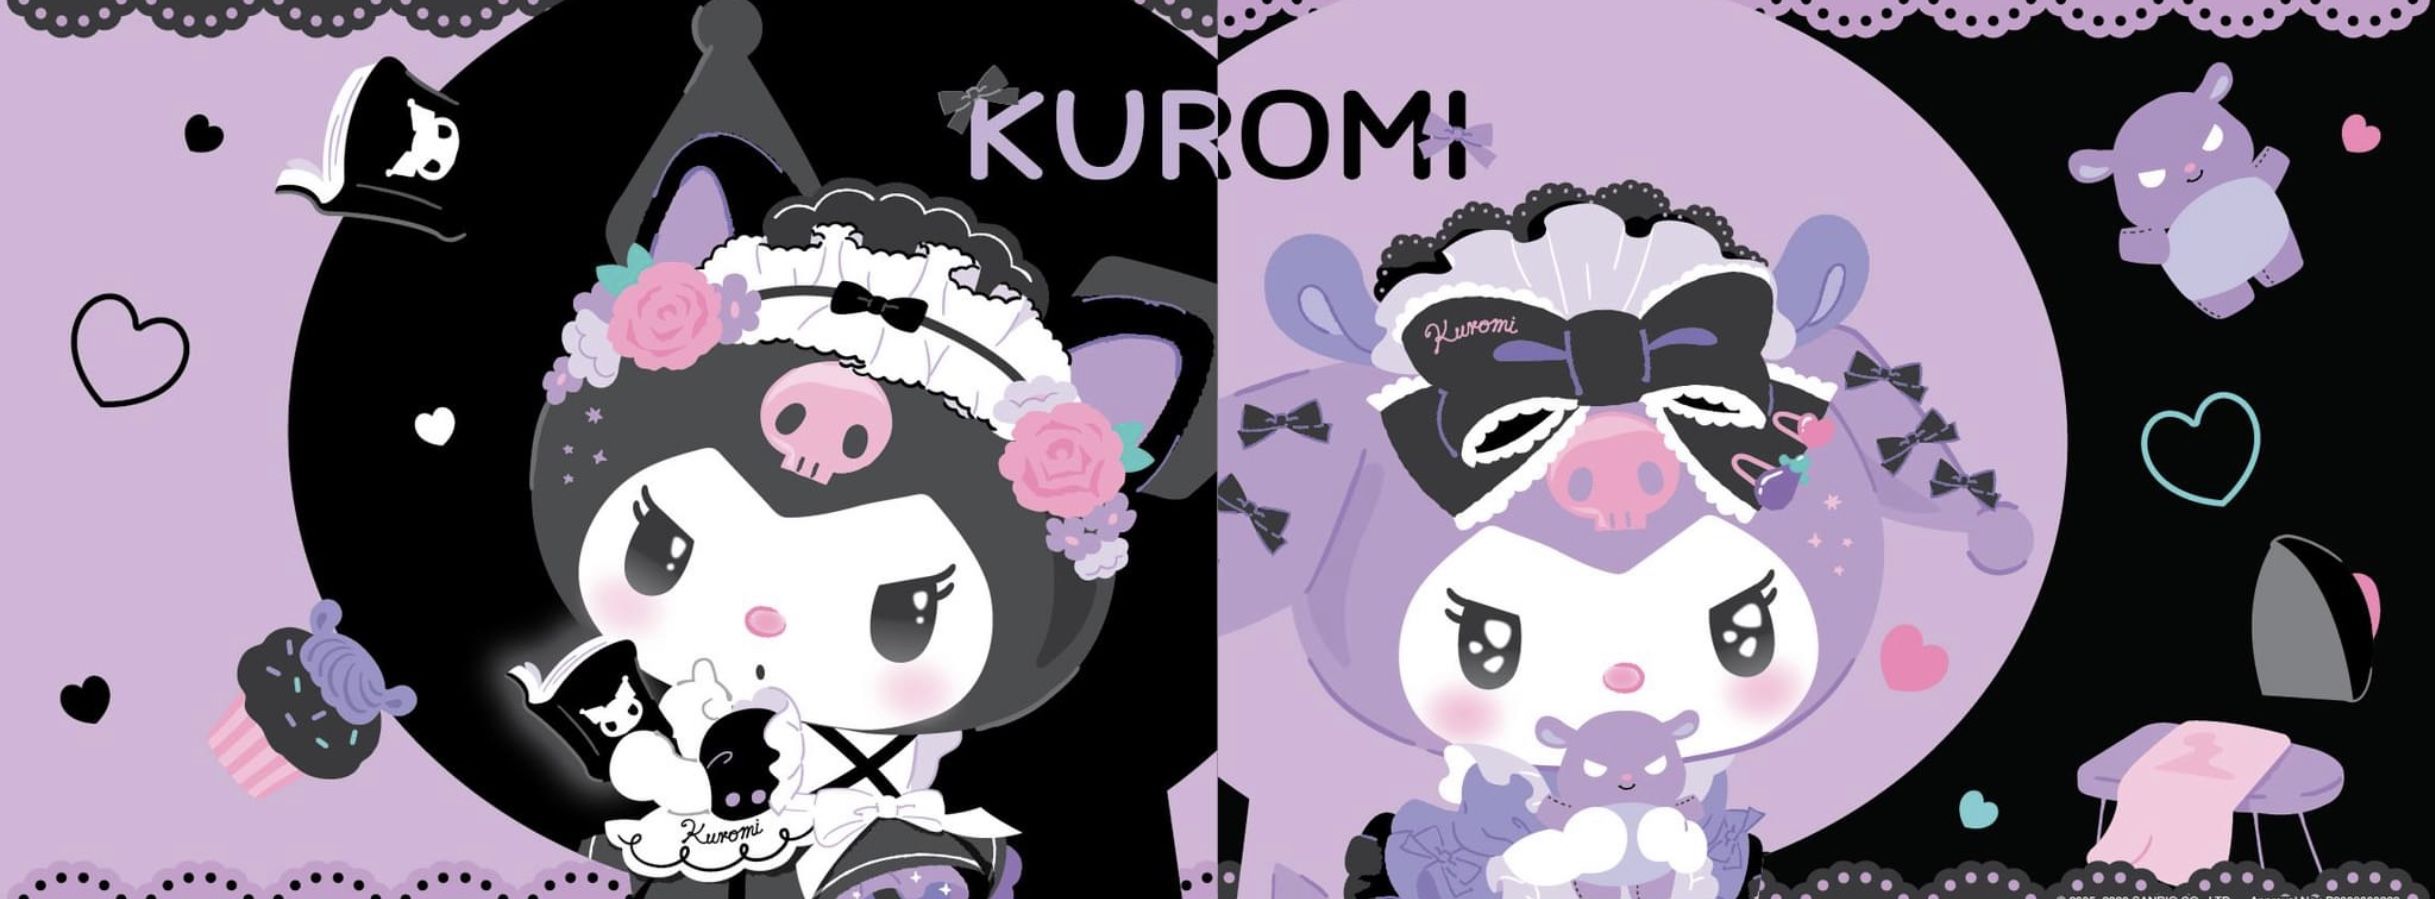 Kuromi Hello kitty wallpaper hd Hello kitty iphone wallpaper